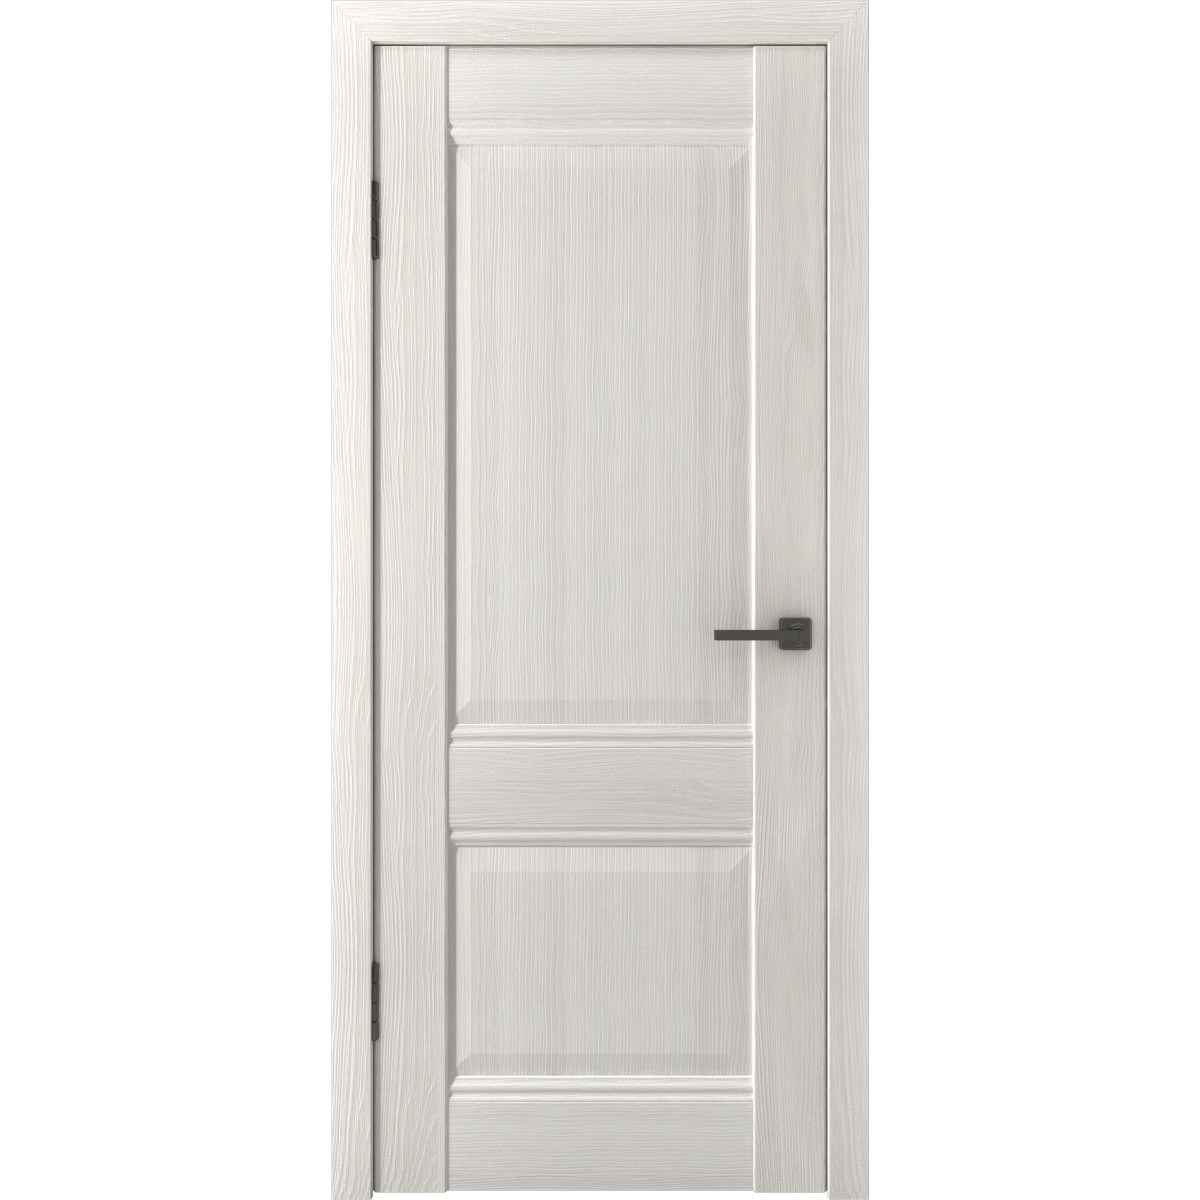 Дверь межкомнатная глухая с замком и петлями в комплекте Классик 2 80x200 см ПП цвет белёный дуб